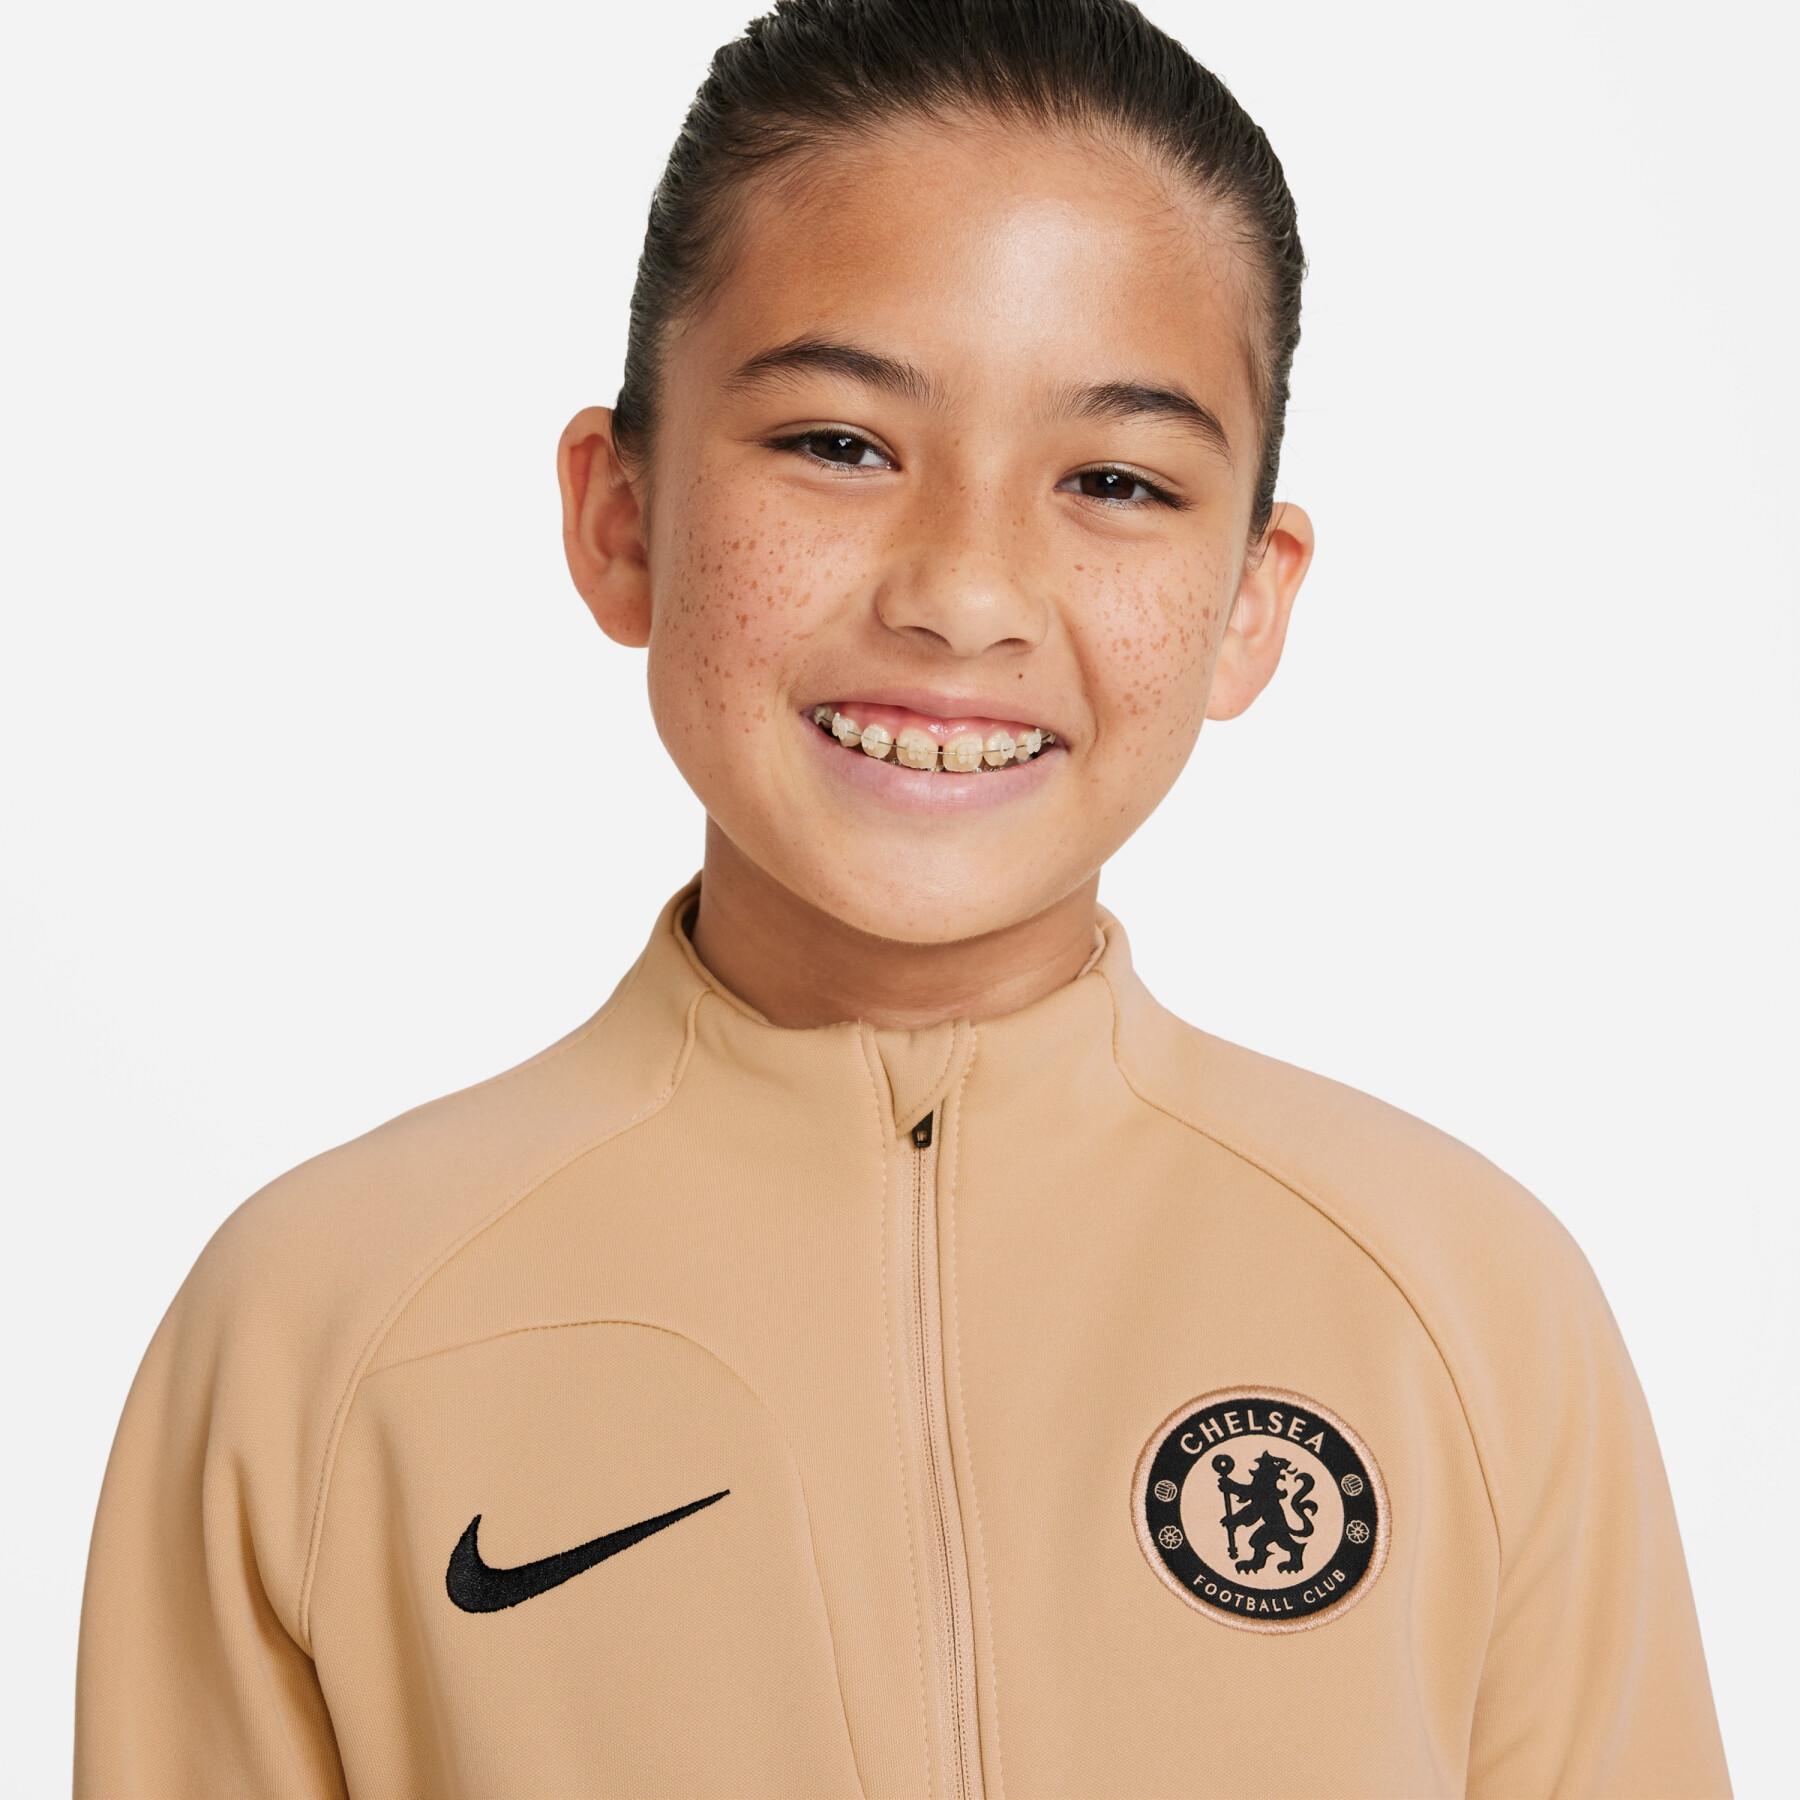 Chelsea child anthem tracksuit jacket 2022/23